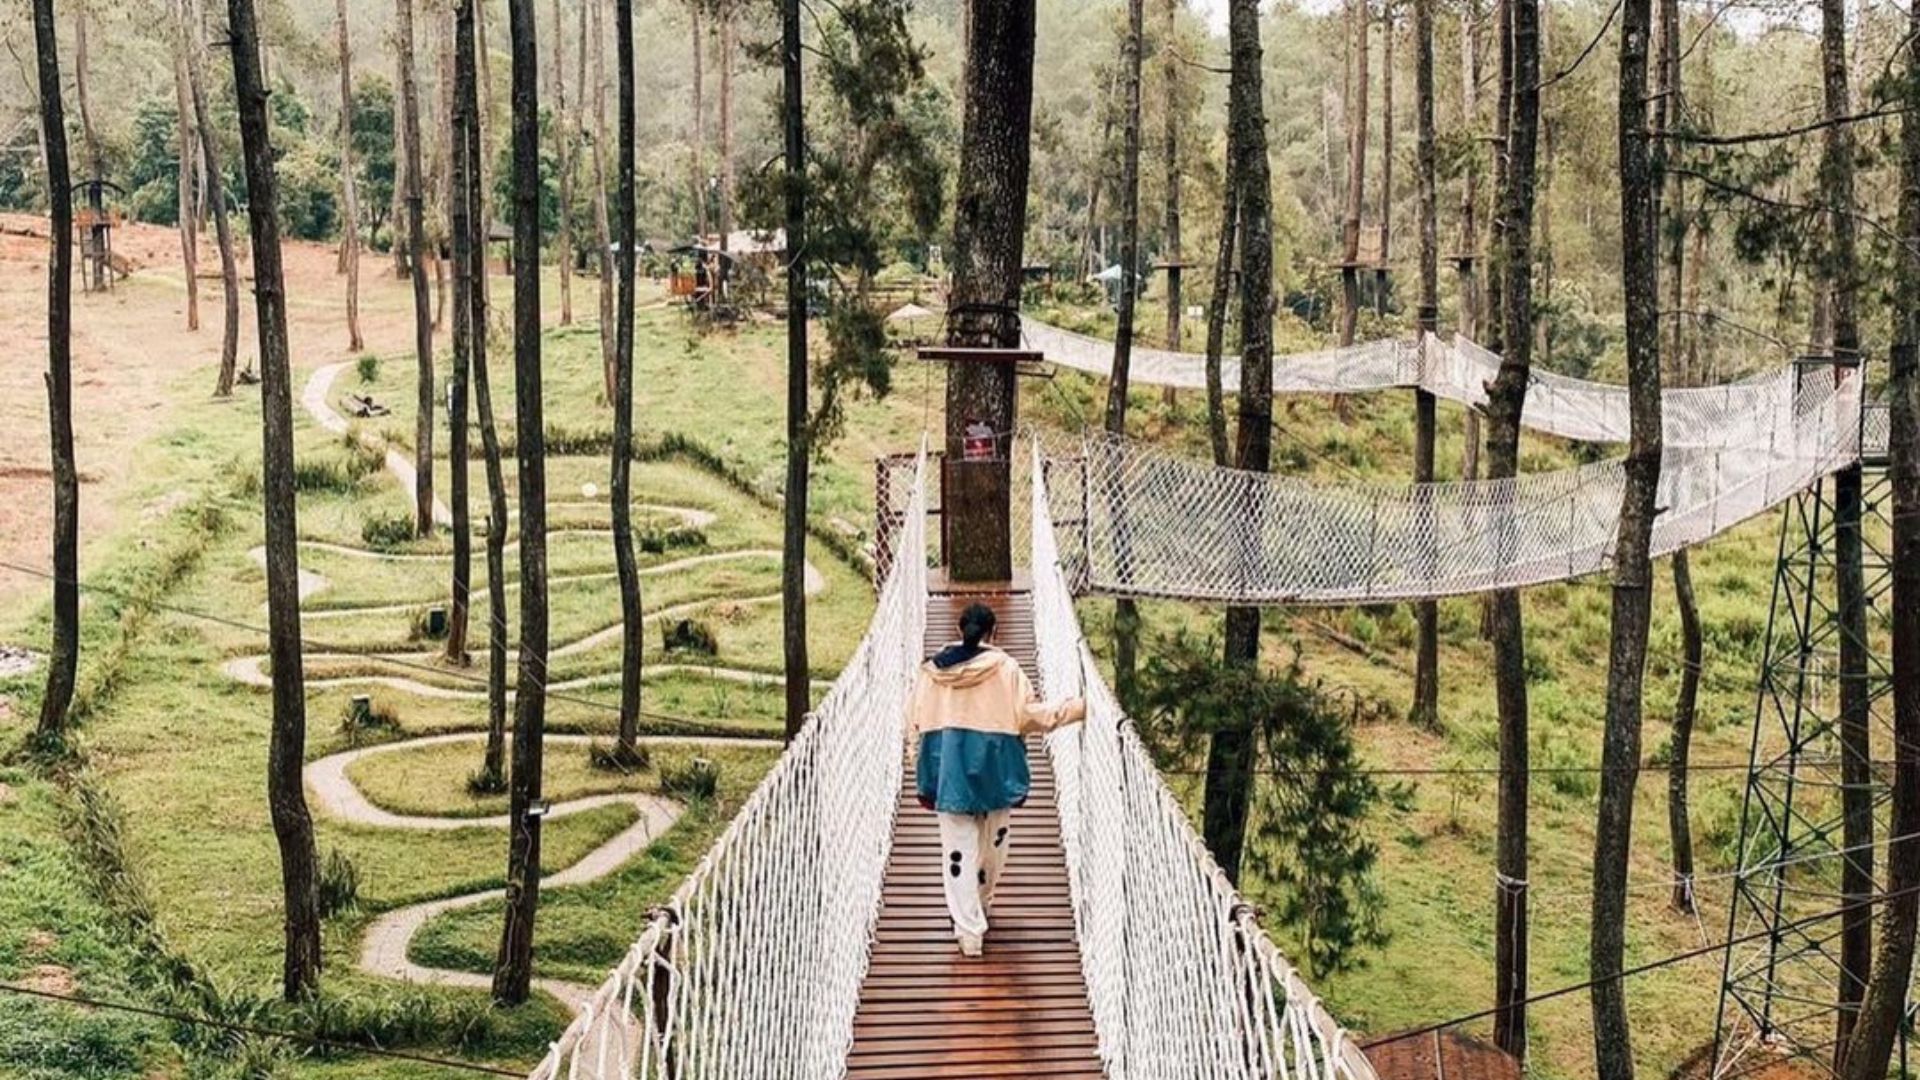 Berjalan di jembatan kayu yang indah yang berada di Orchid Forest Cikole, Bandung.